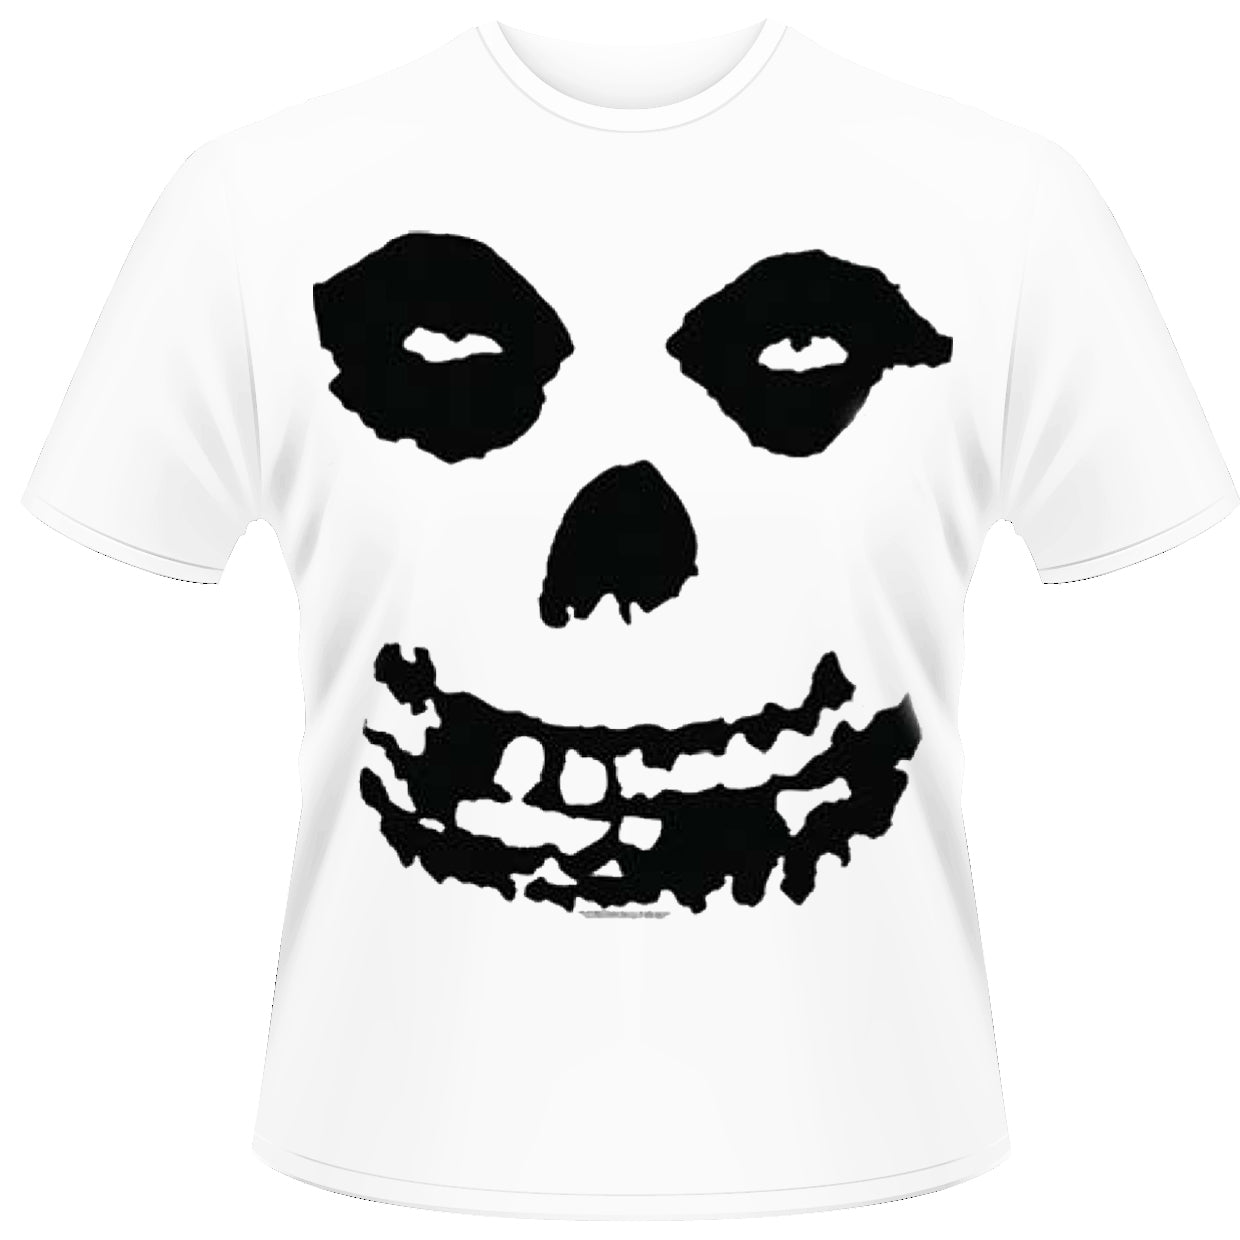 Misfits "All Over Skull" T shirt